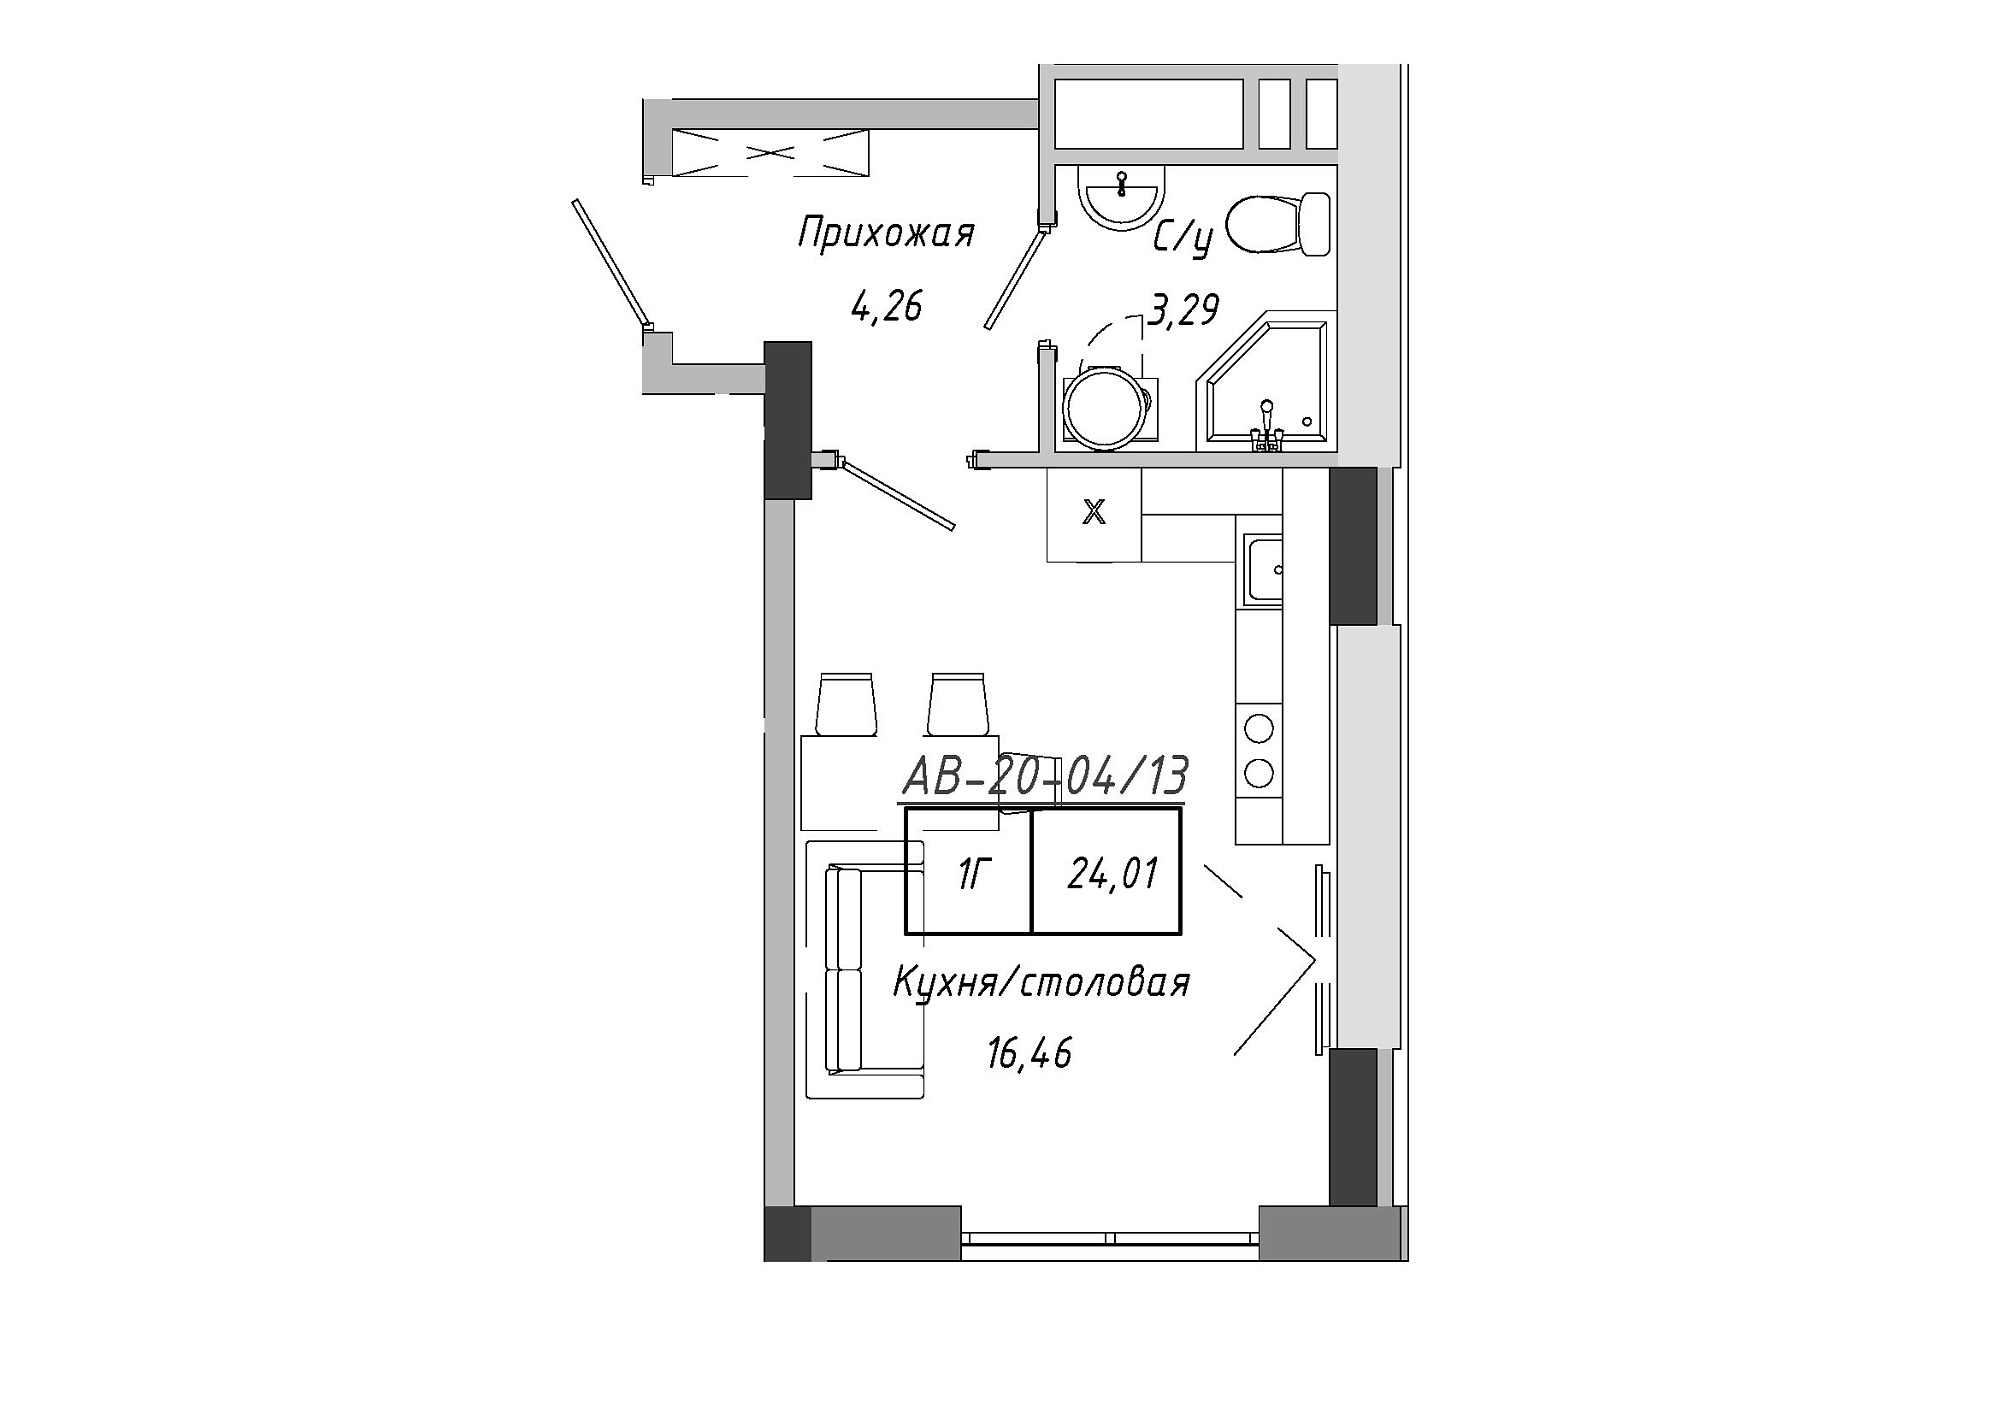 Планування Smart-квартира площею 24.01м2, AB-20-04/00013.